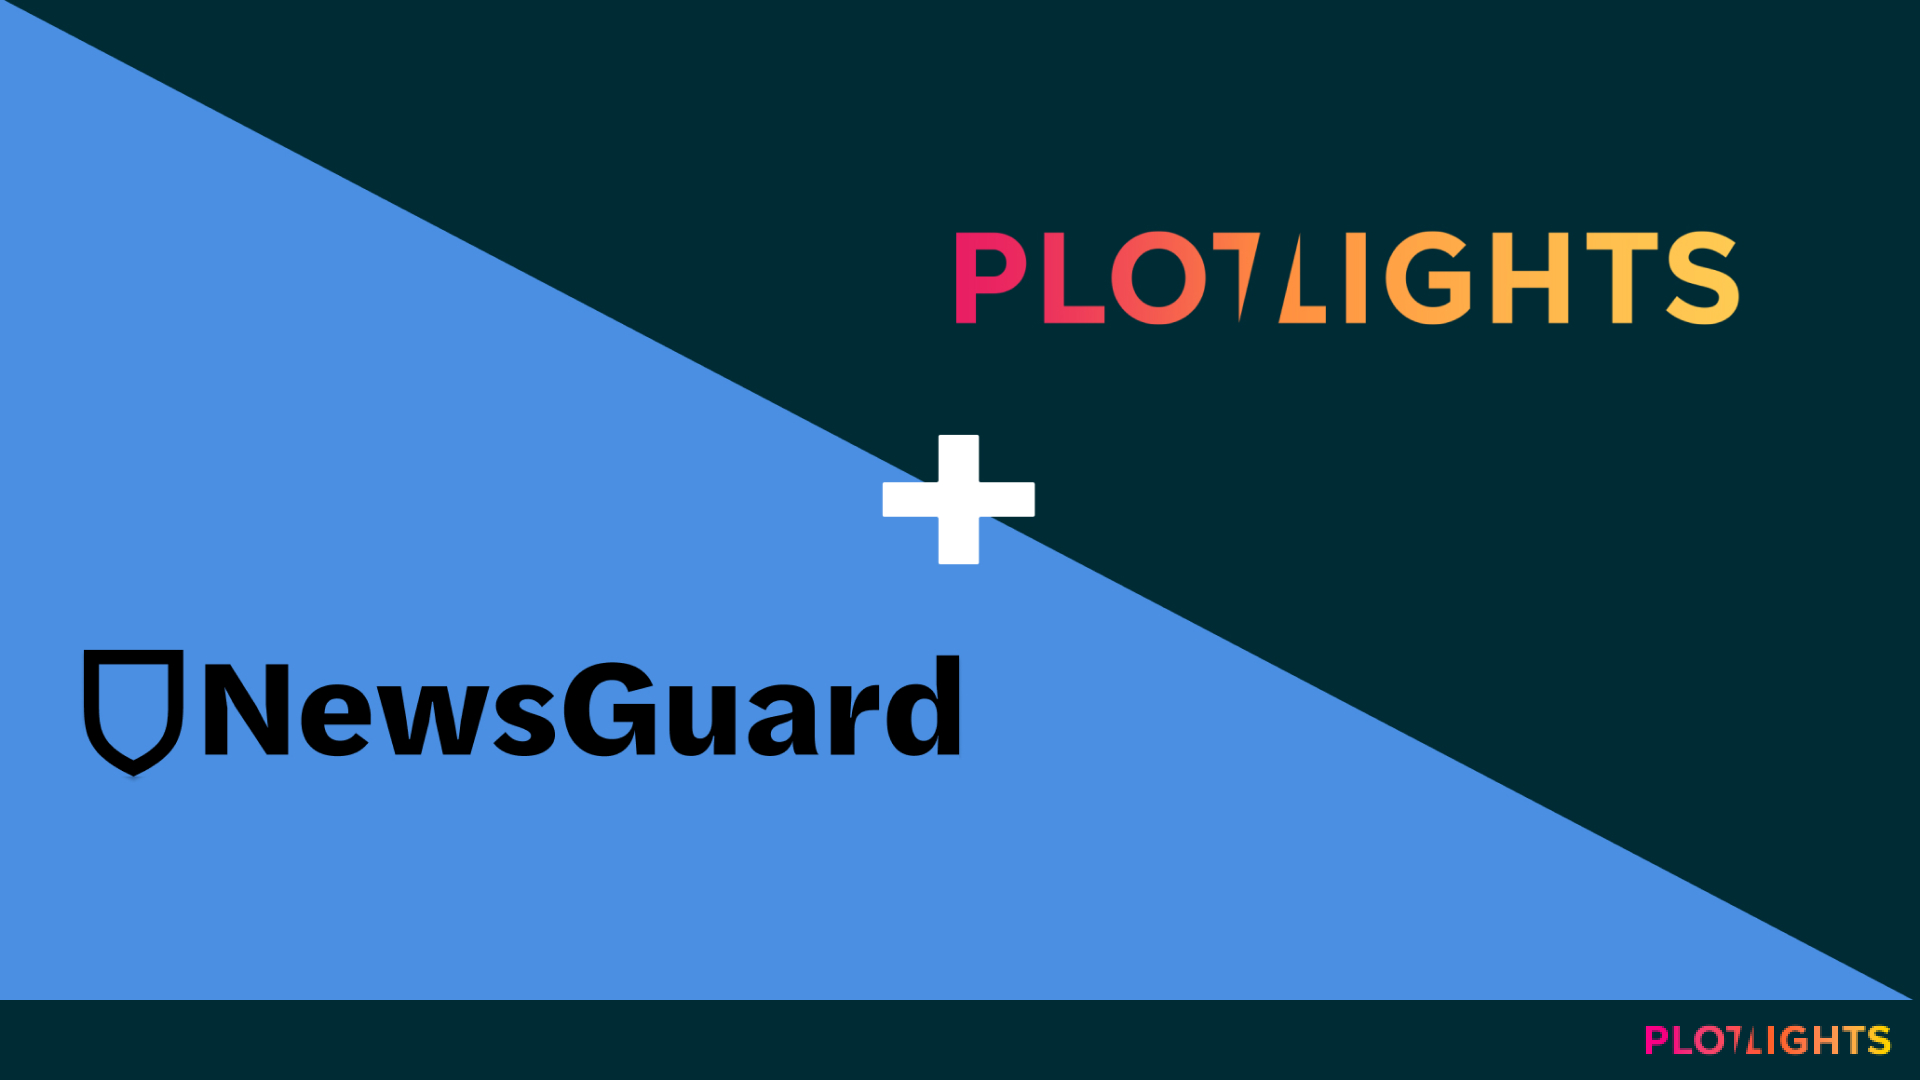 Plotlights&Newsguard_misinformation